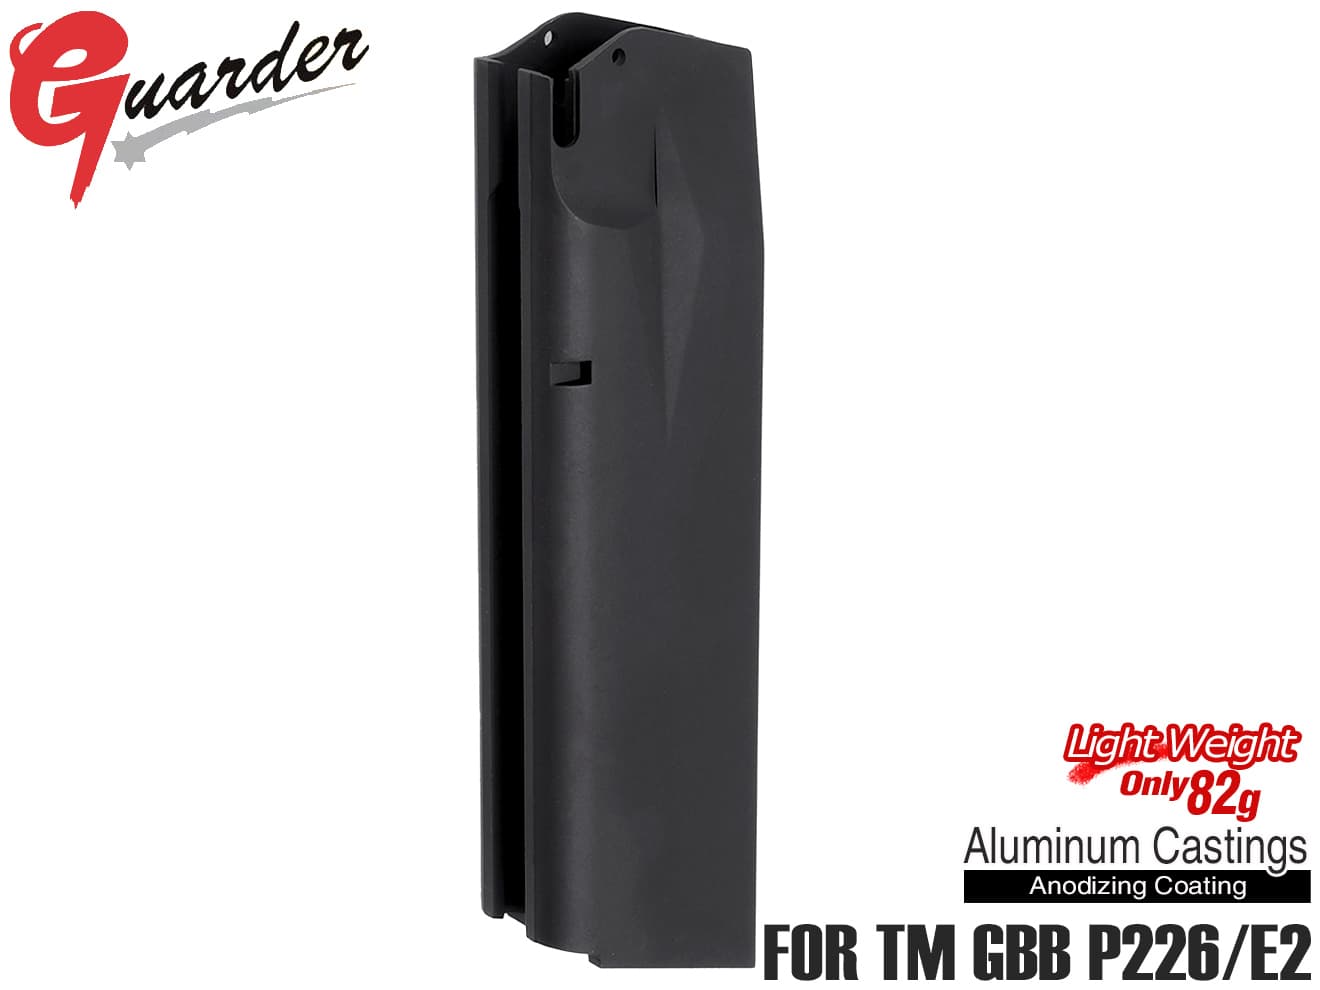 P226-75(BK)　GUARDER ライトウェイト アルミマガジンCOMP 25発 ノーマーキング for マルイ P226/E2シリーズ